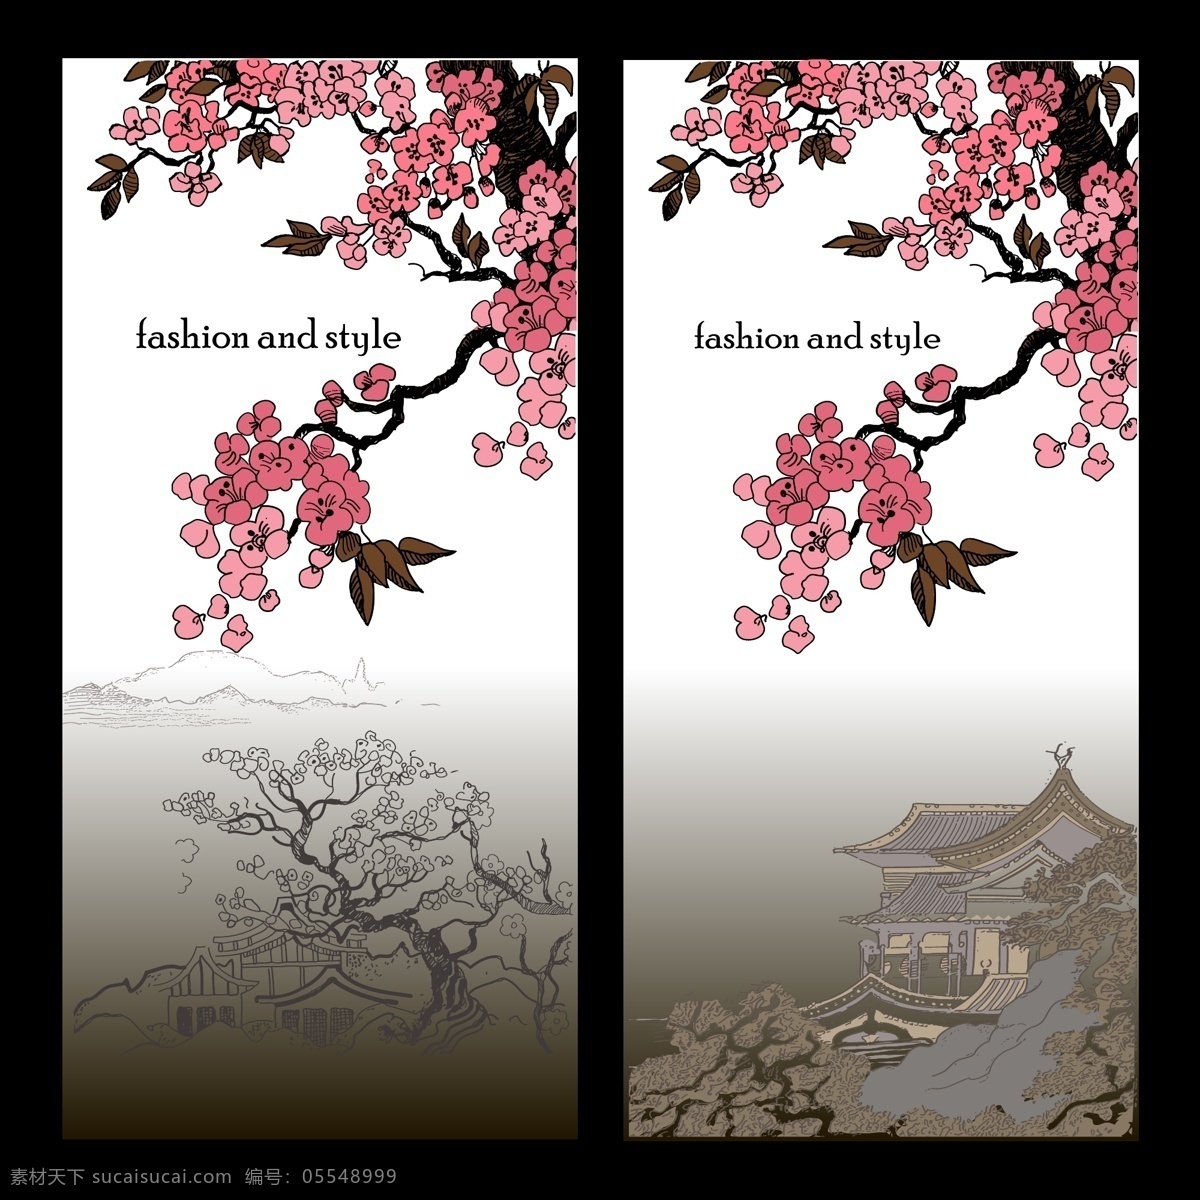 日本 元素 卡片 矢量 建筑 树木 几何图案 背景素材 创意设计 屋顶 贺卡背景